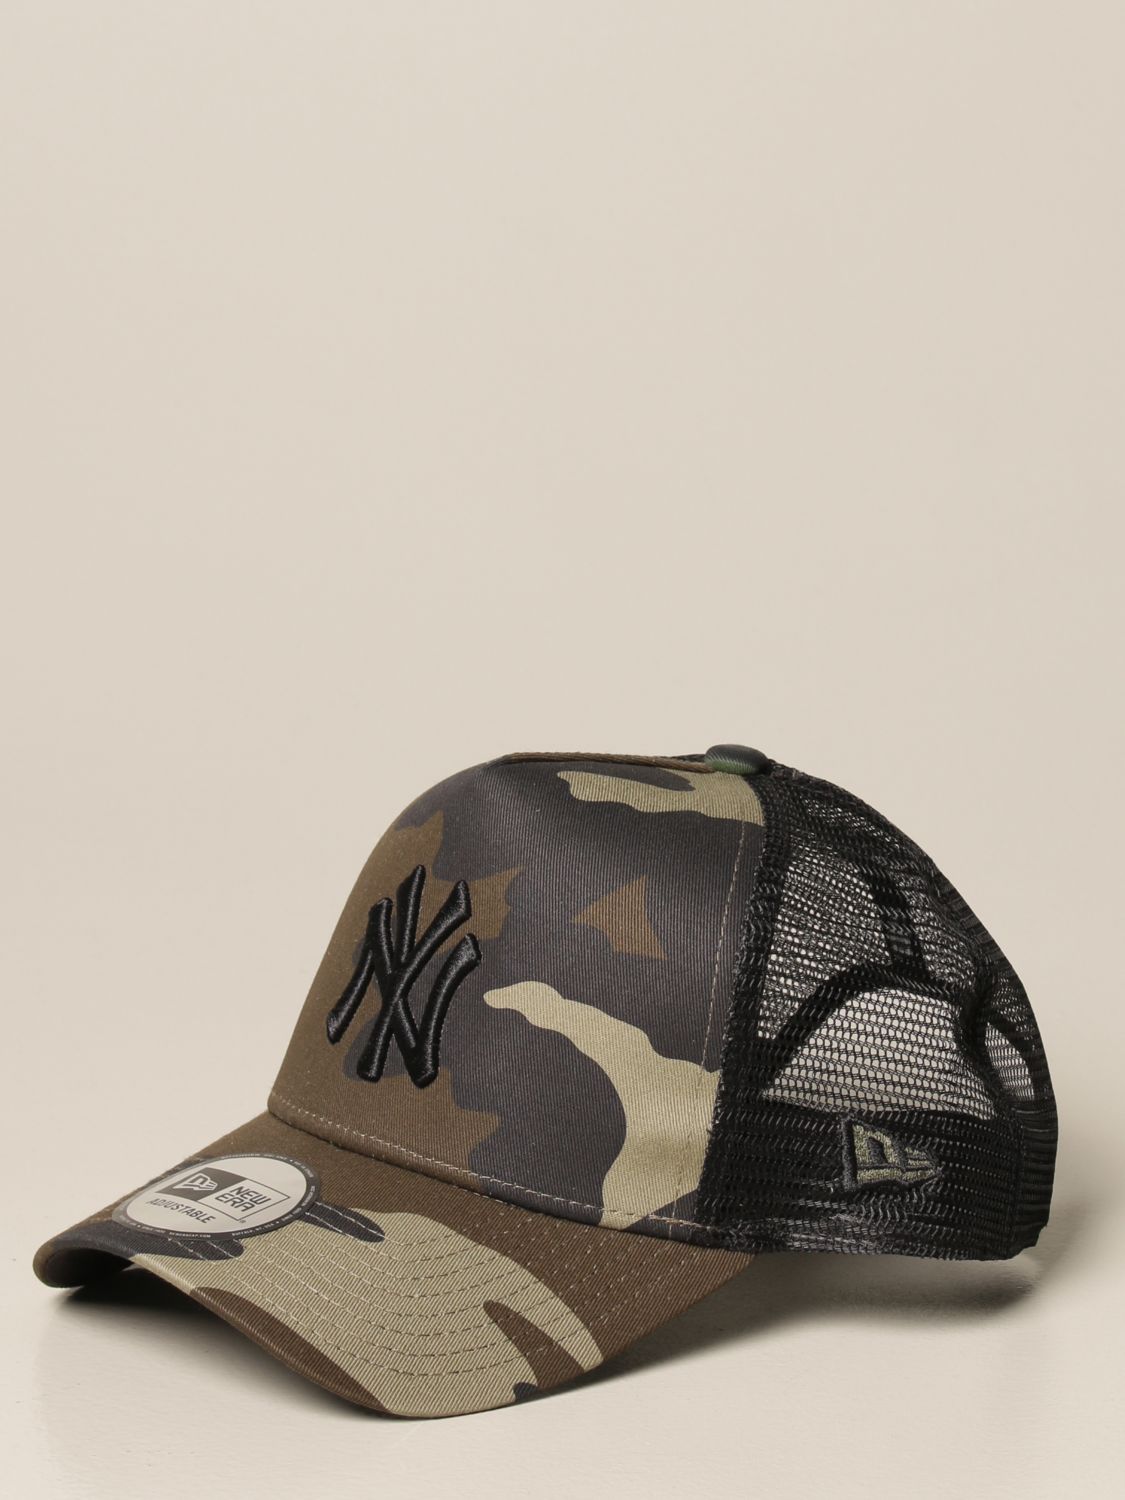 Tot Dodelijk Verzadigen NEW ERA: League 9forty baseball cap with logo - Military | New Era hat  11579473 online on GIGLIO.COM